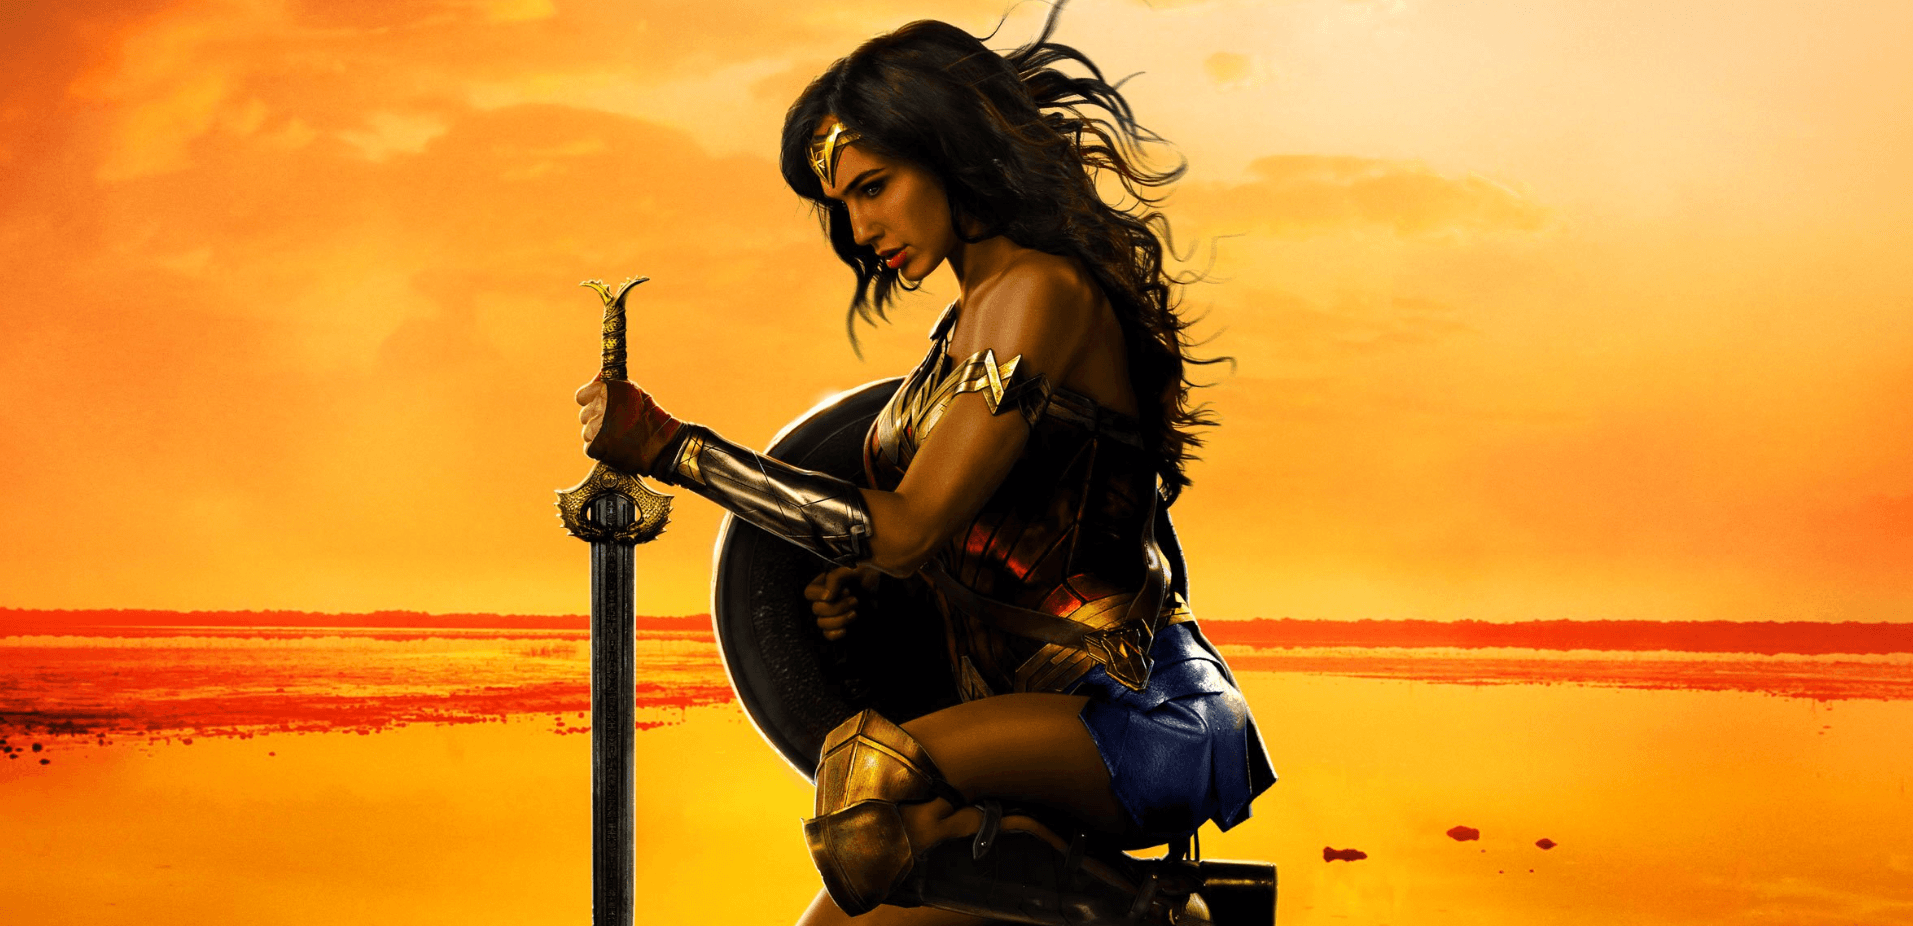 Wonder Woman Movie Wallpaper Free Wonder Woman Movie Background